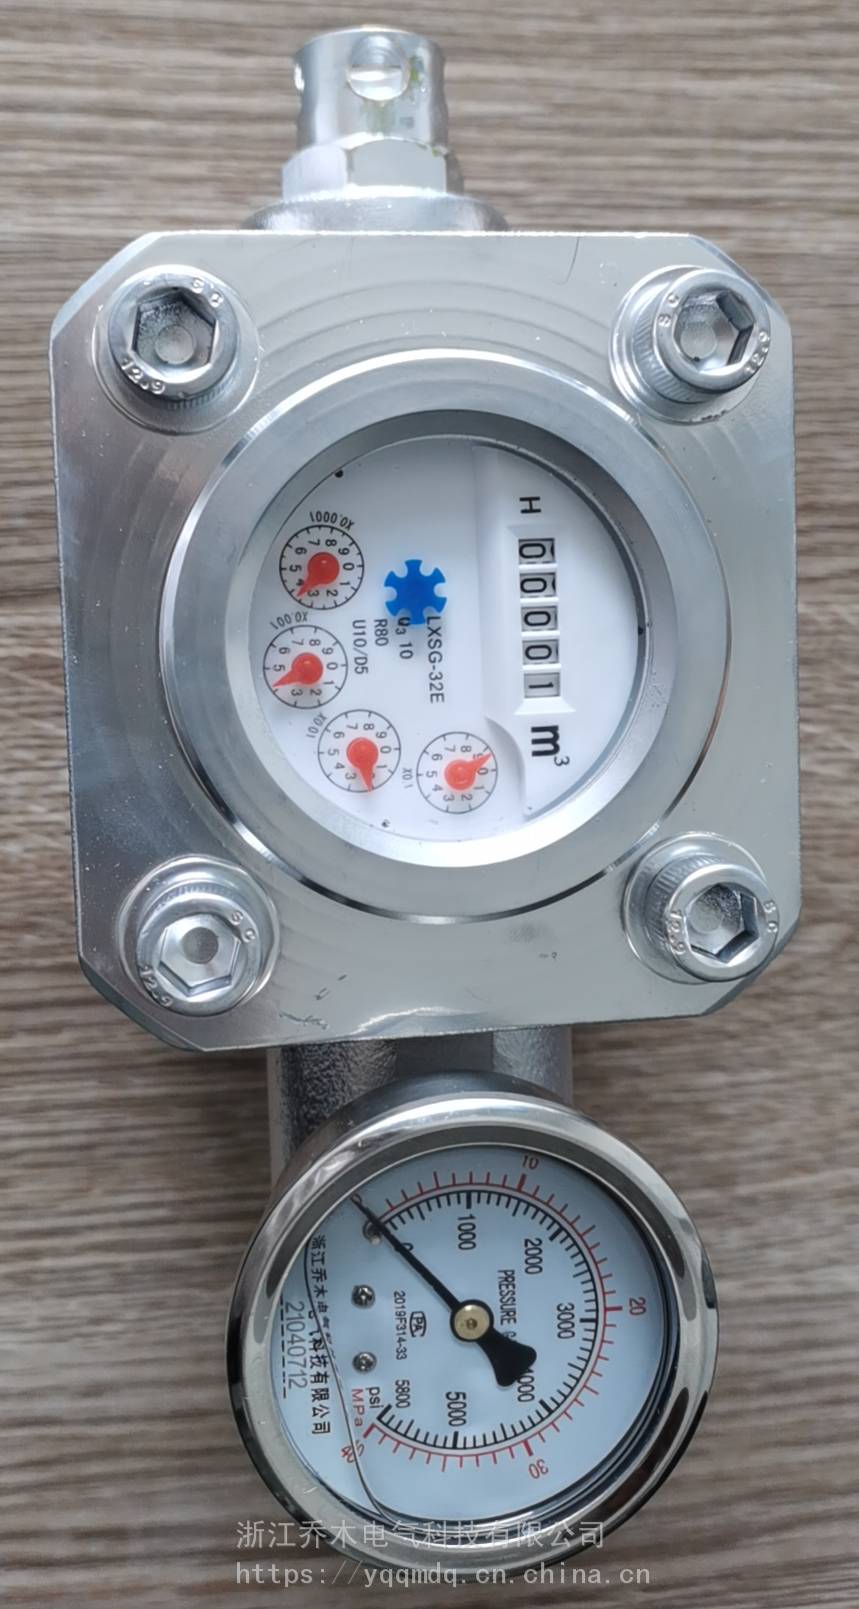 乔木电气SGS型双功能高压注水表矿用煤层流量封孔器表